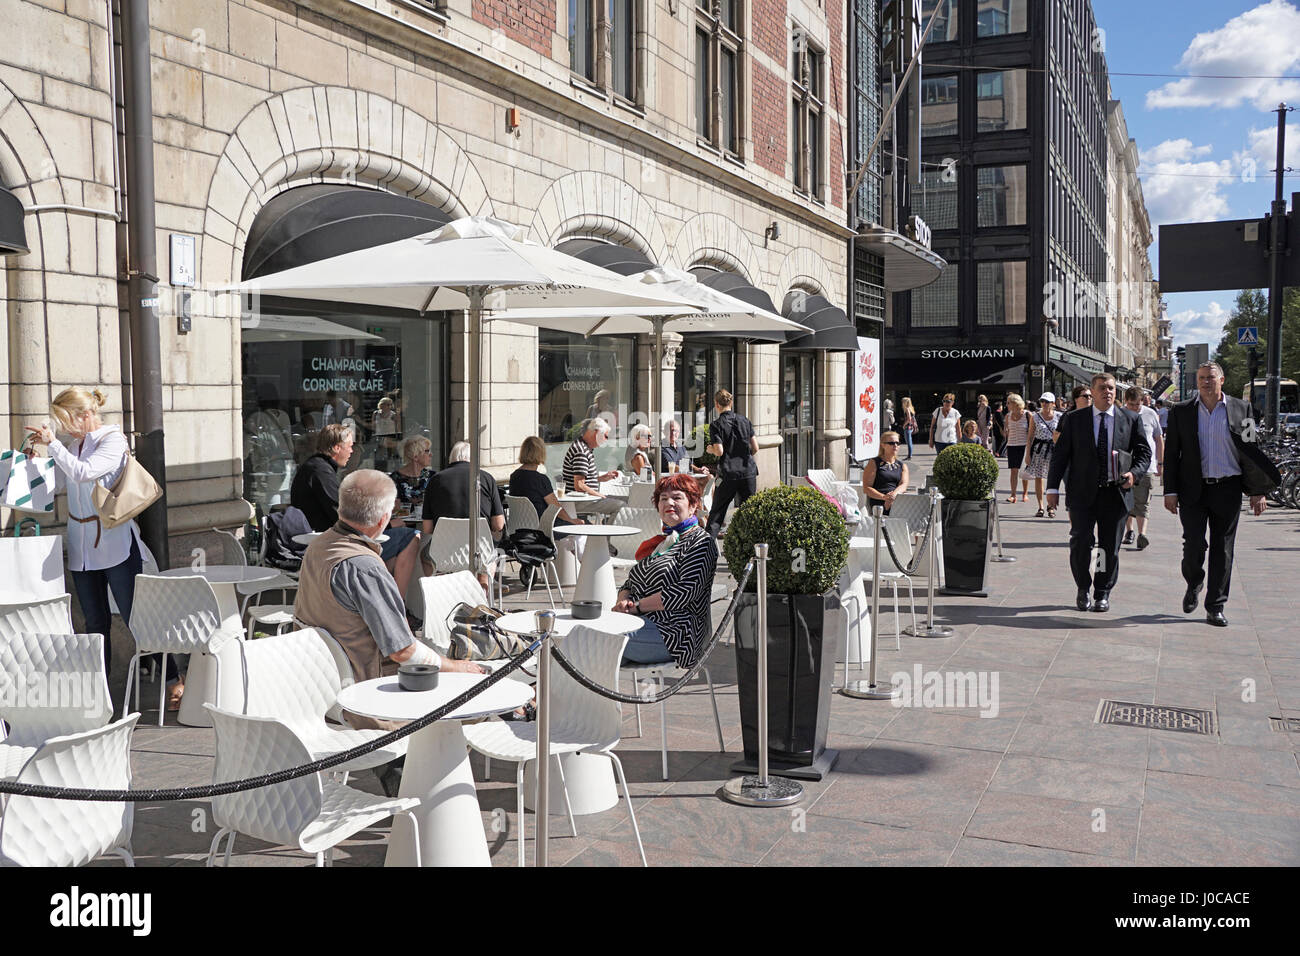 Café al aire libre en el centro de Helsinki Stockman Department Store. Foto de stock